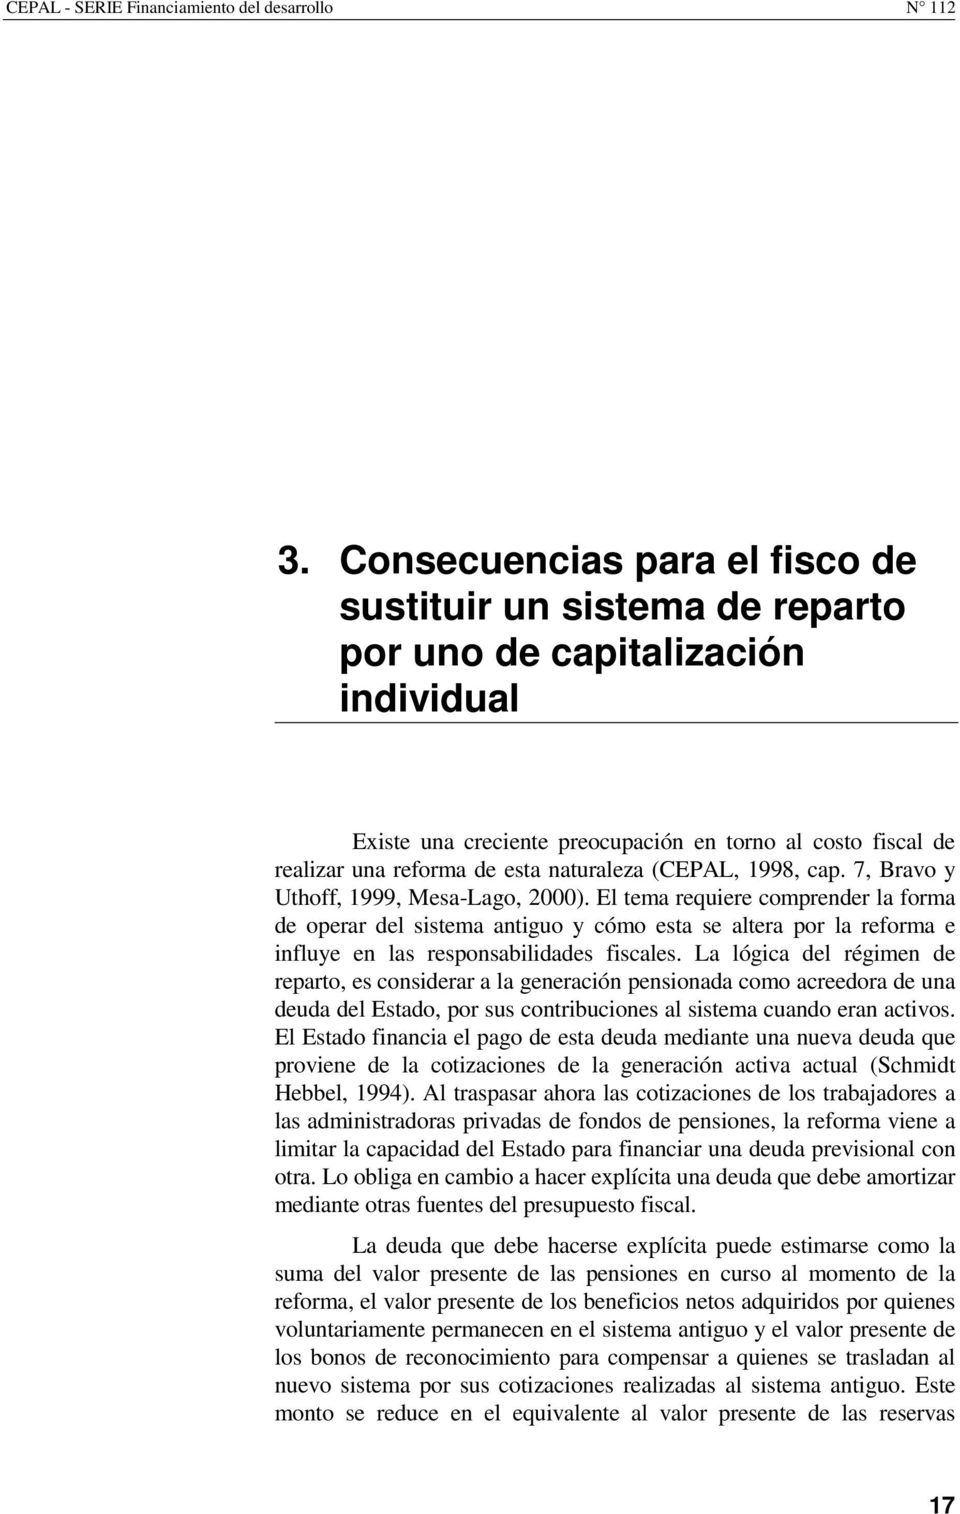 naturaleza (CEPAL, 1998, cap. 7, Bravo y Uthoff, 1999, Mesa-Lago, 2000).